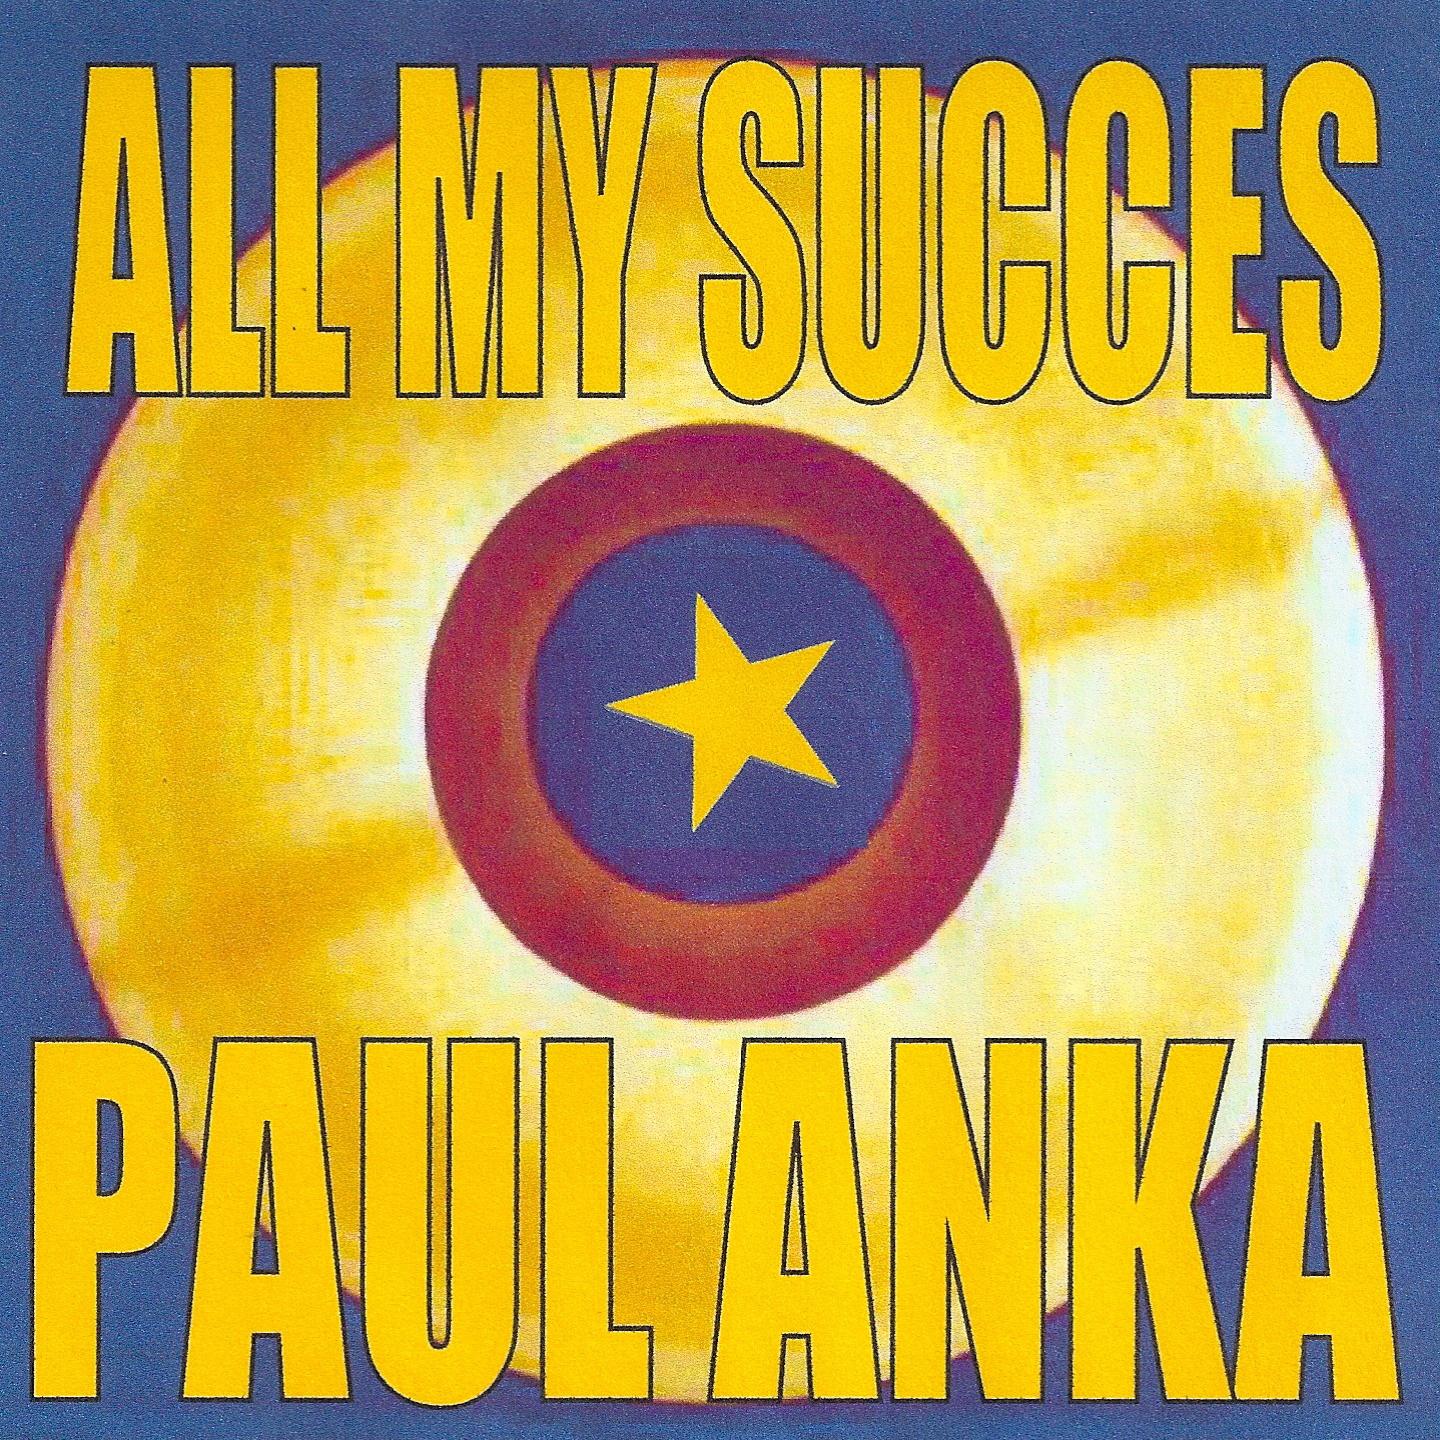 All My Succes - Paul Anka专辑